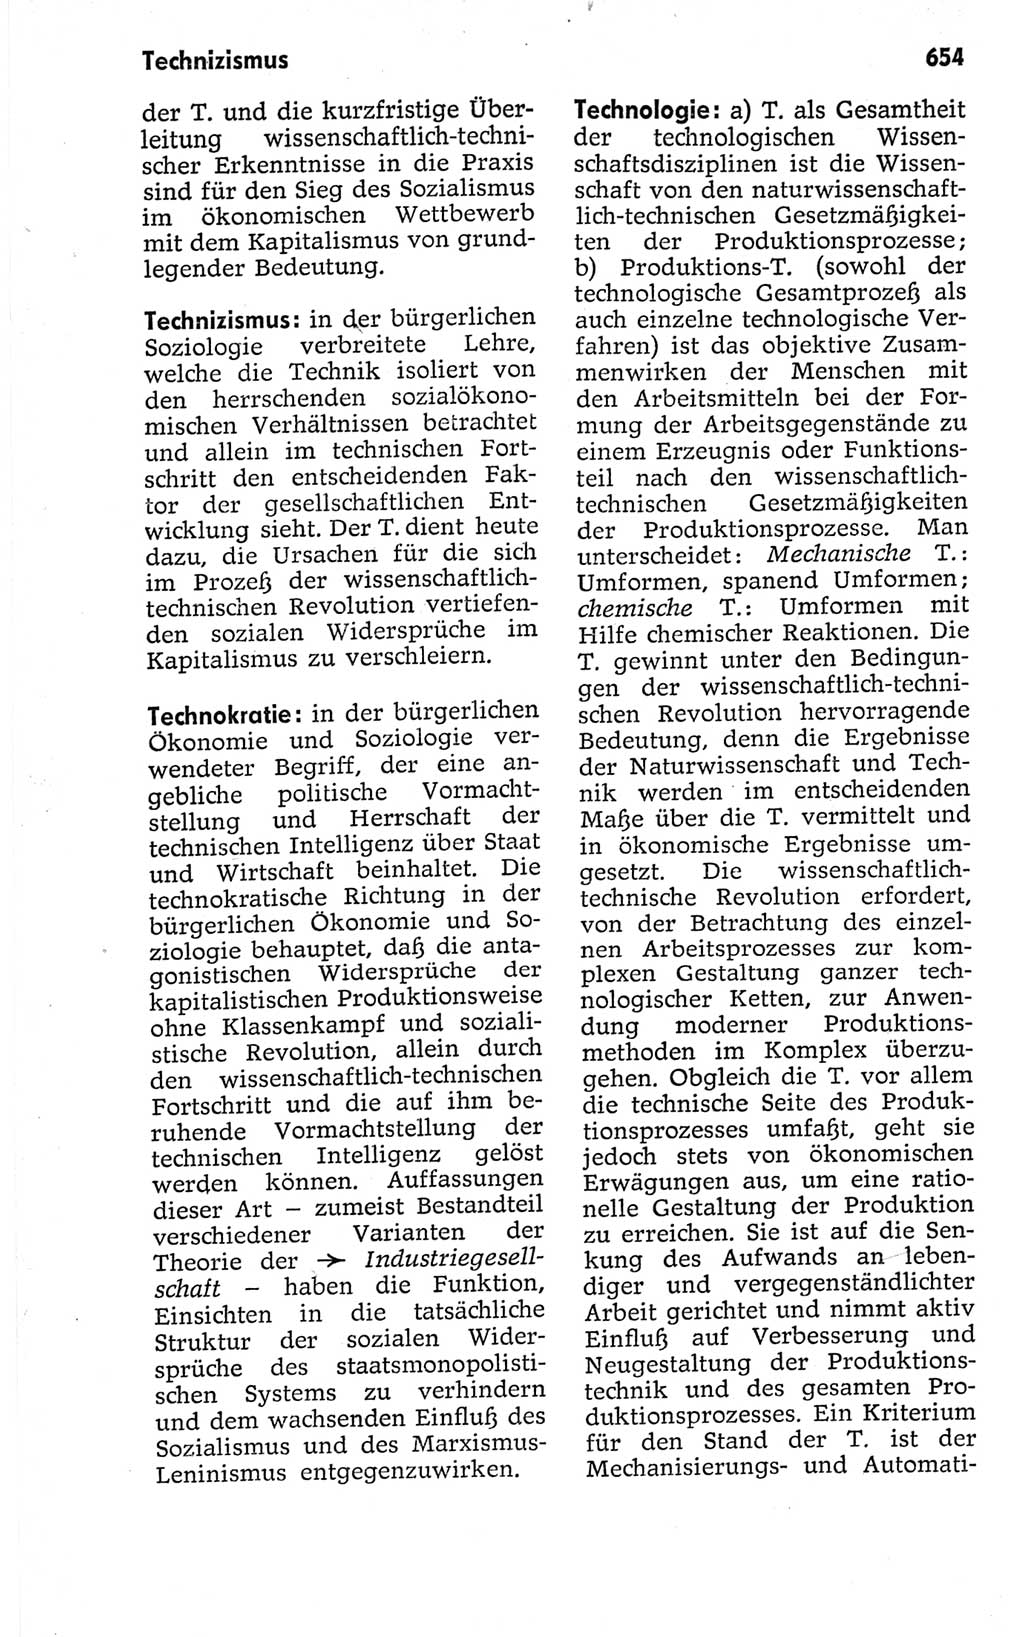 Kleines politisches Wörterbuch [Deutsche Demokratische Republik (DDR)] 1967, Seite 654 (Kl. pol. Wb. DDR 1967, S. 654)